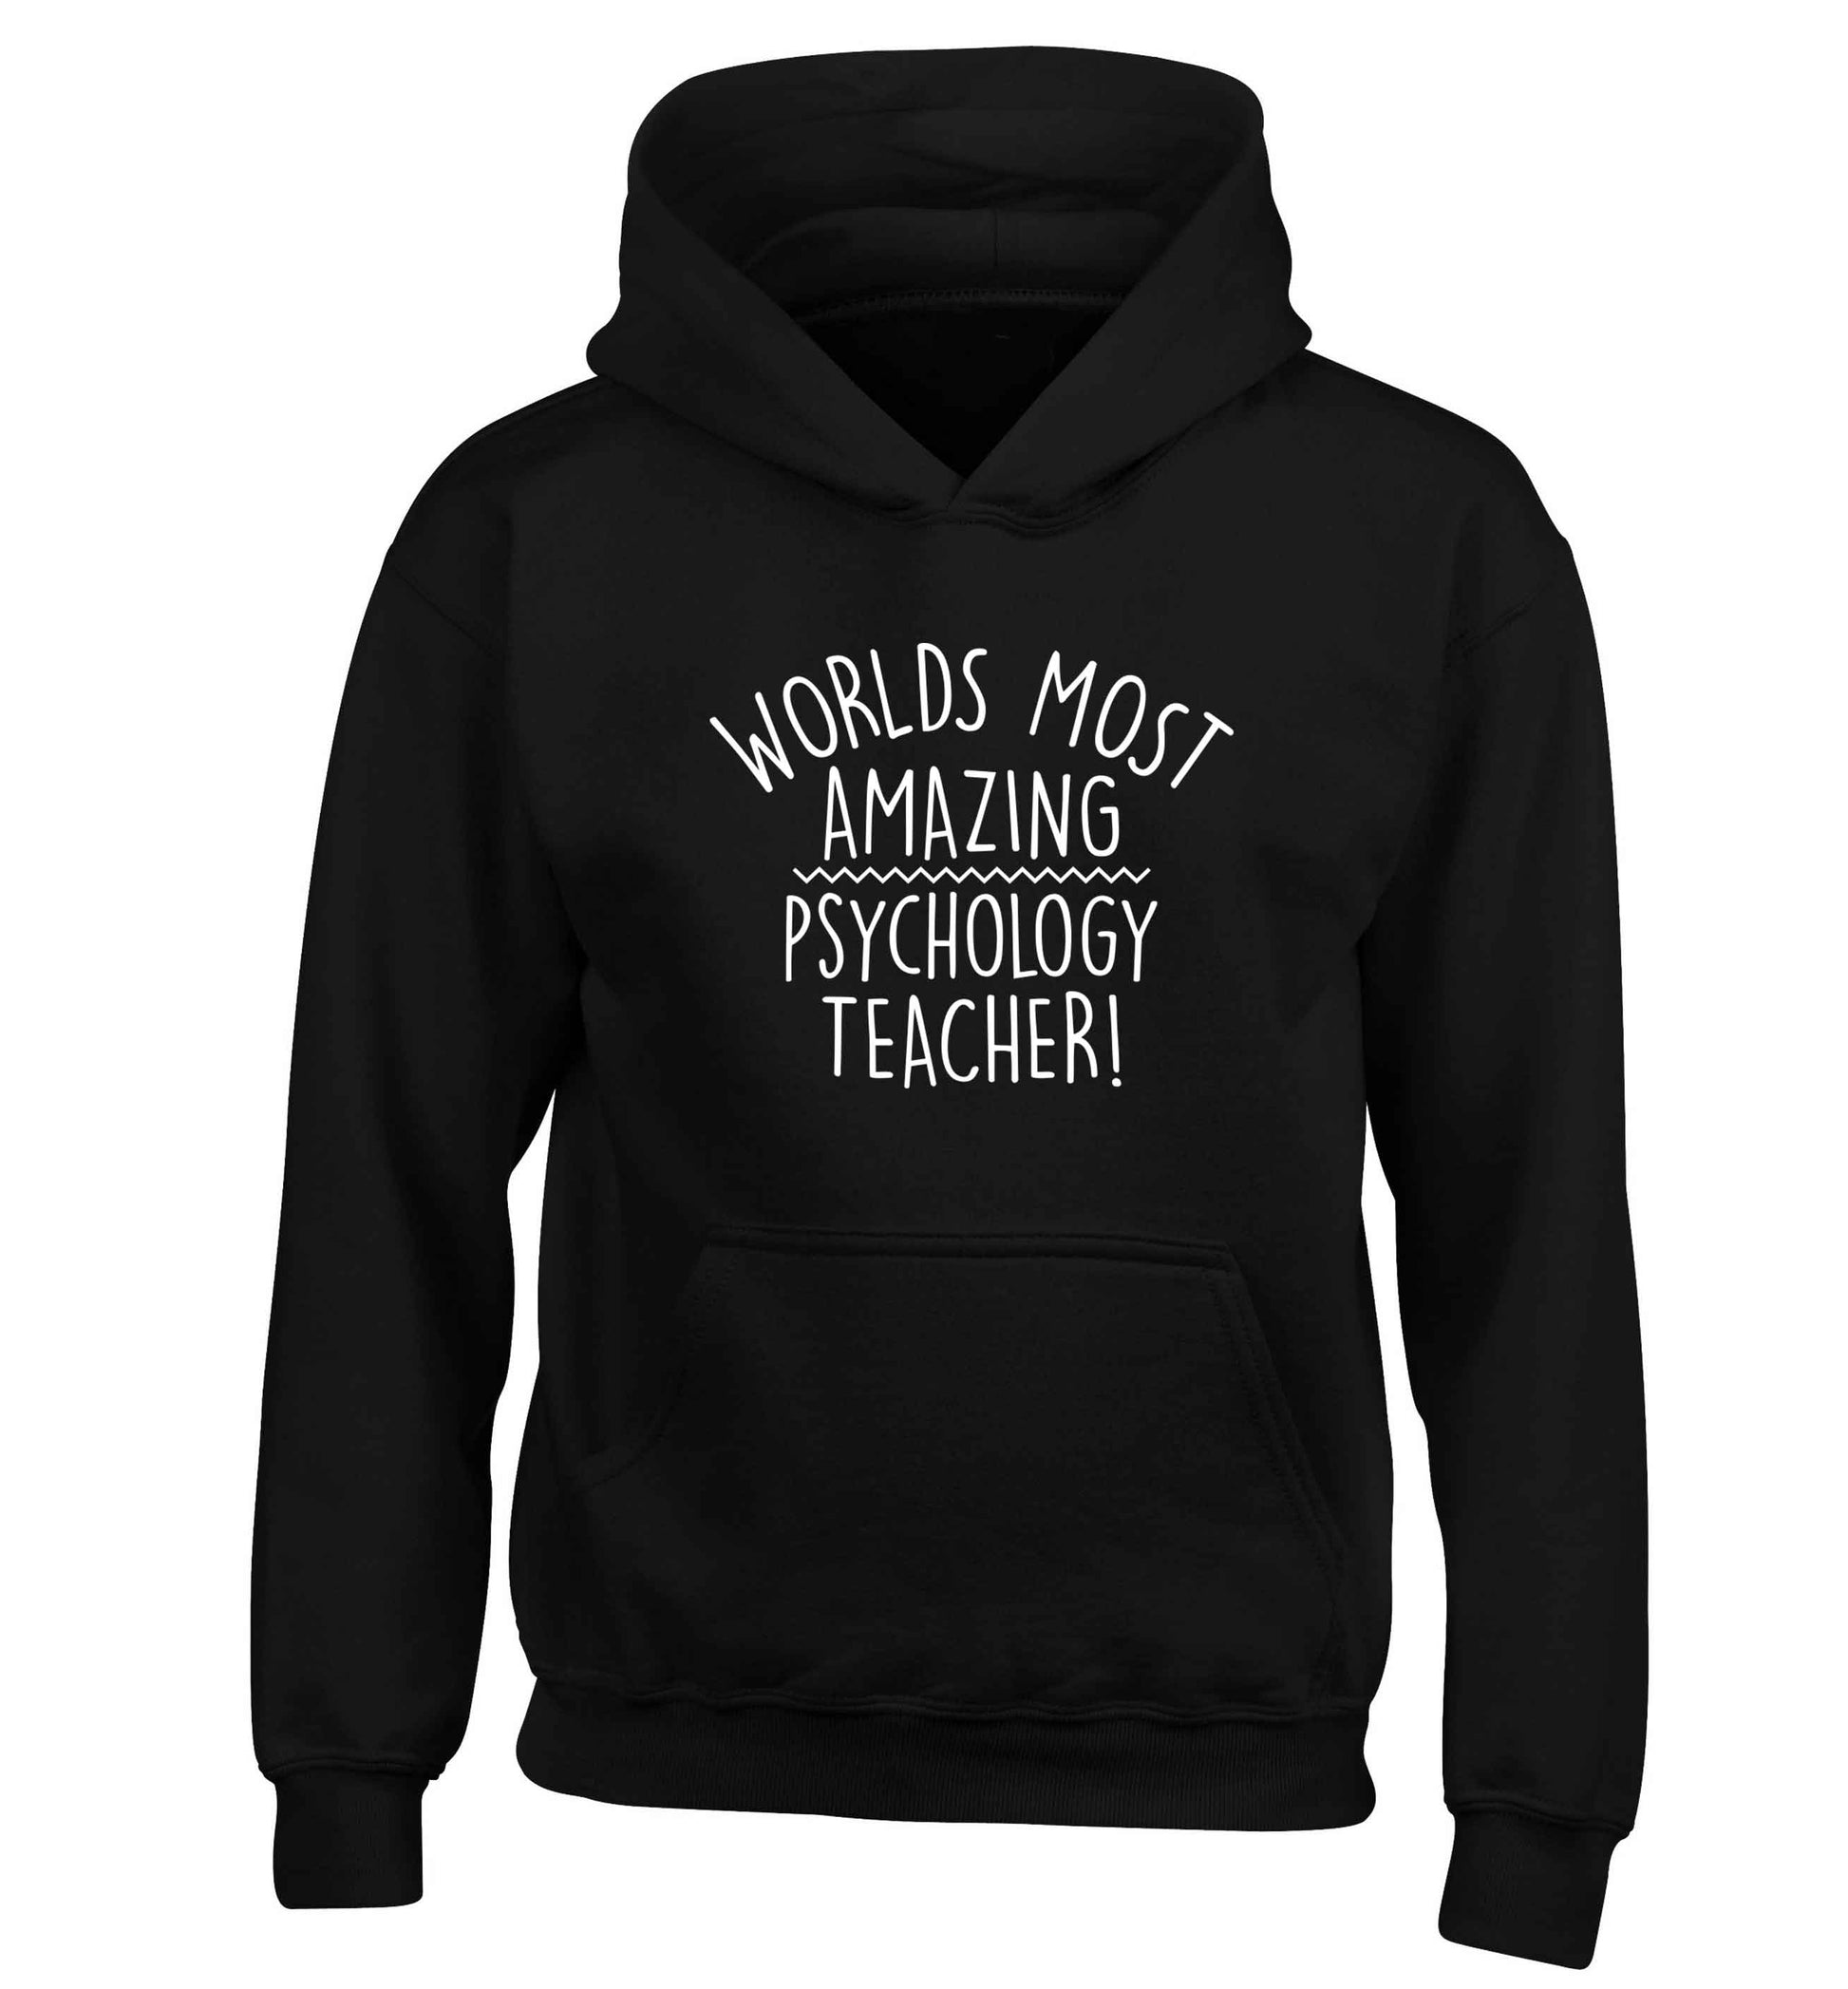 Worlds most amazing psychology teacher children's black hoodie 12-13 Years